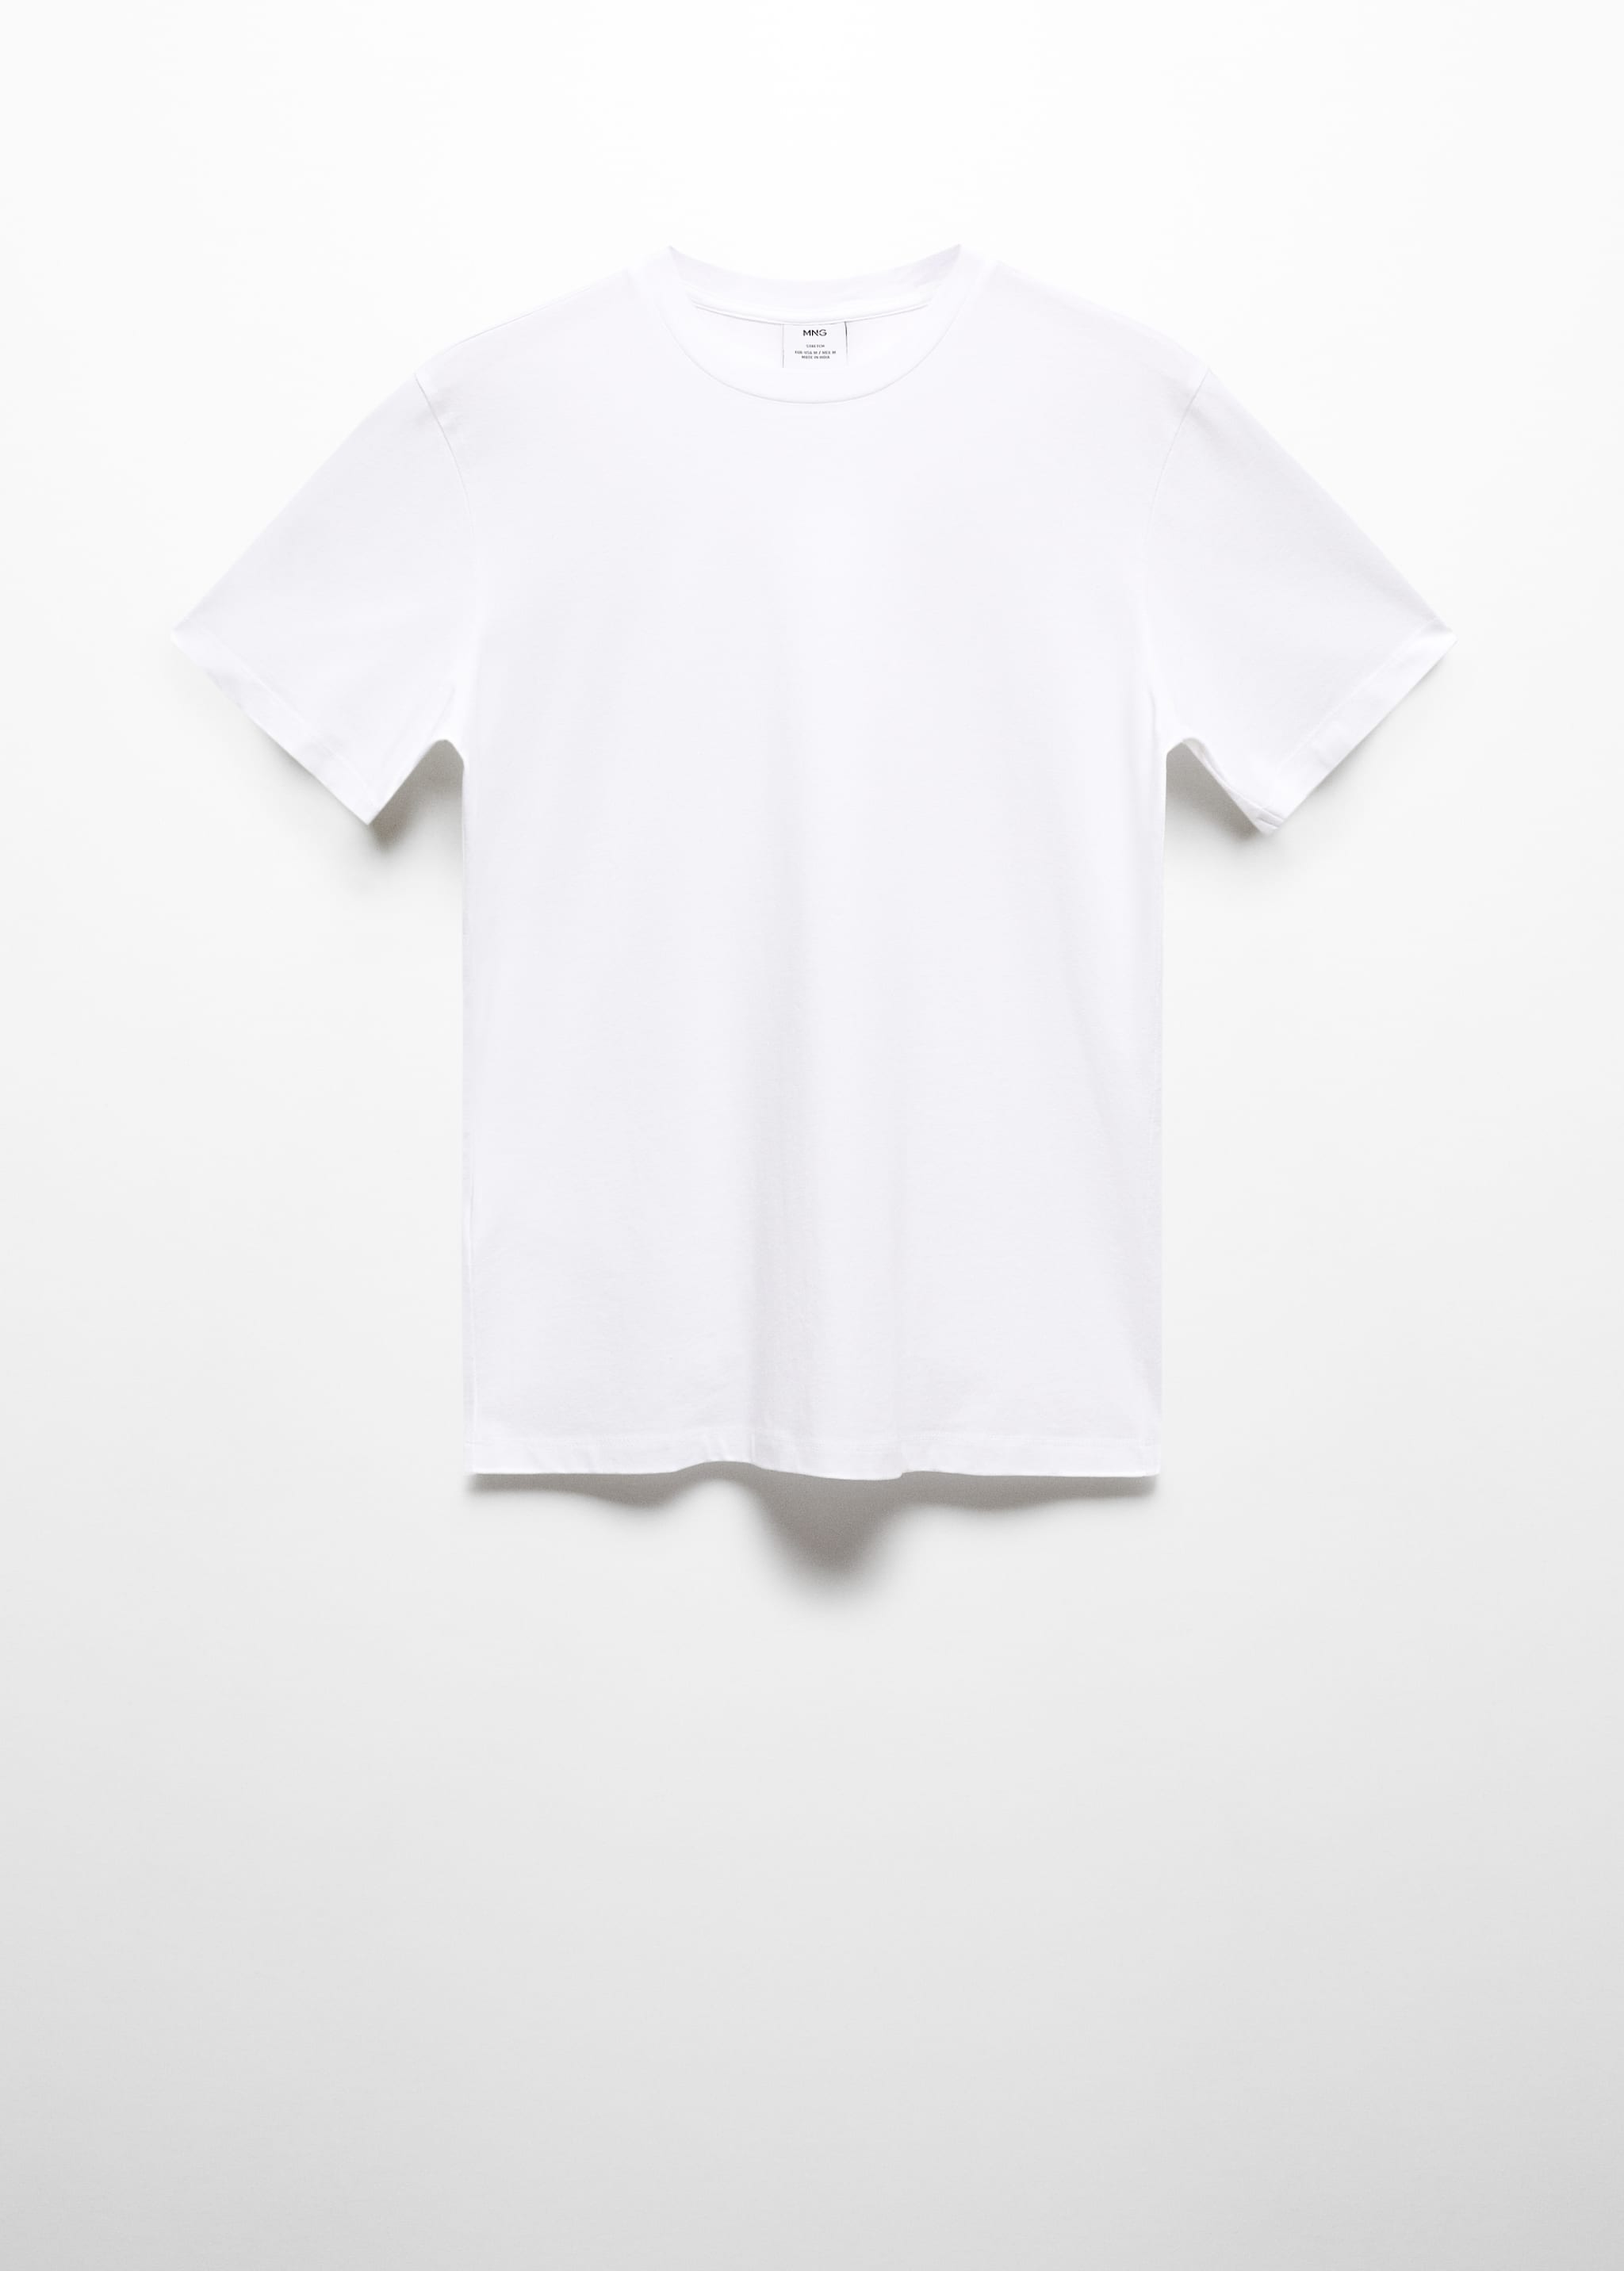 Camiseta algodón stretch - Artículo sin modelo